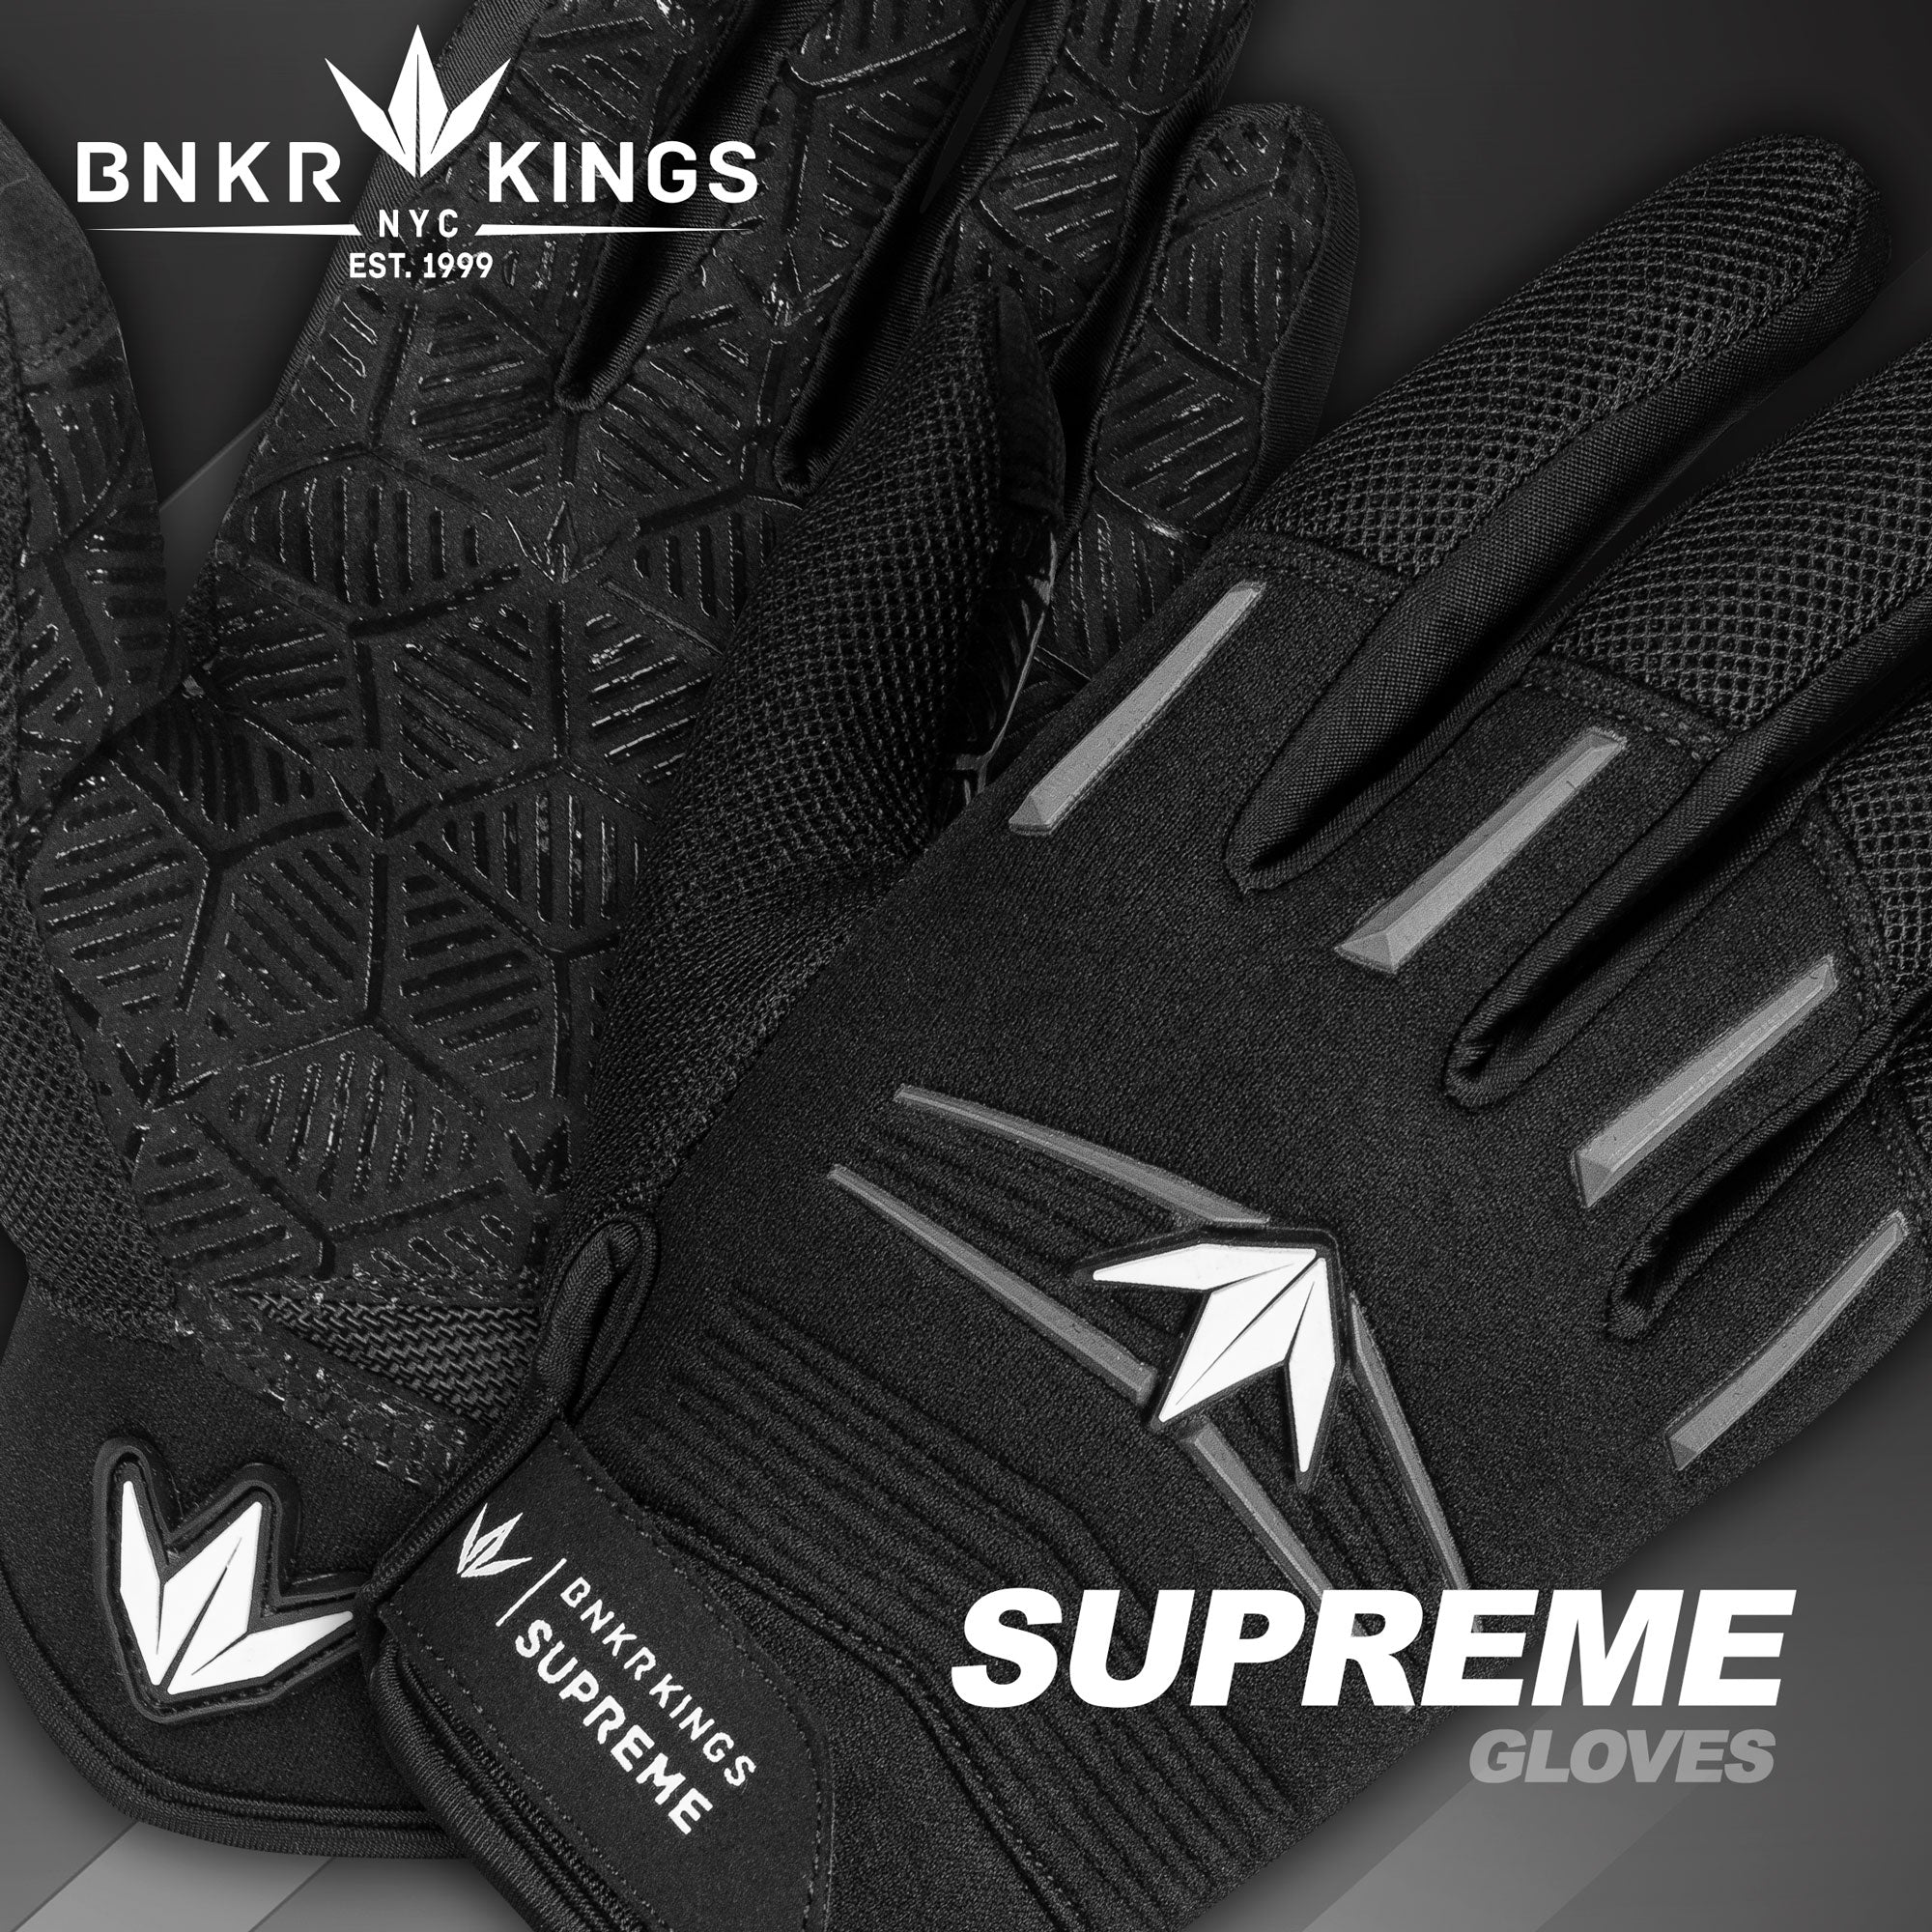 Supreme Paintball Gloves | Black Bunkerkings Padded Gear